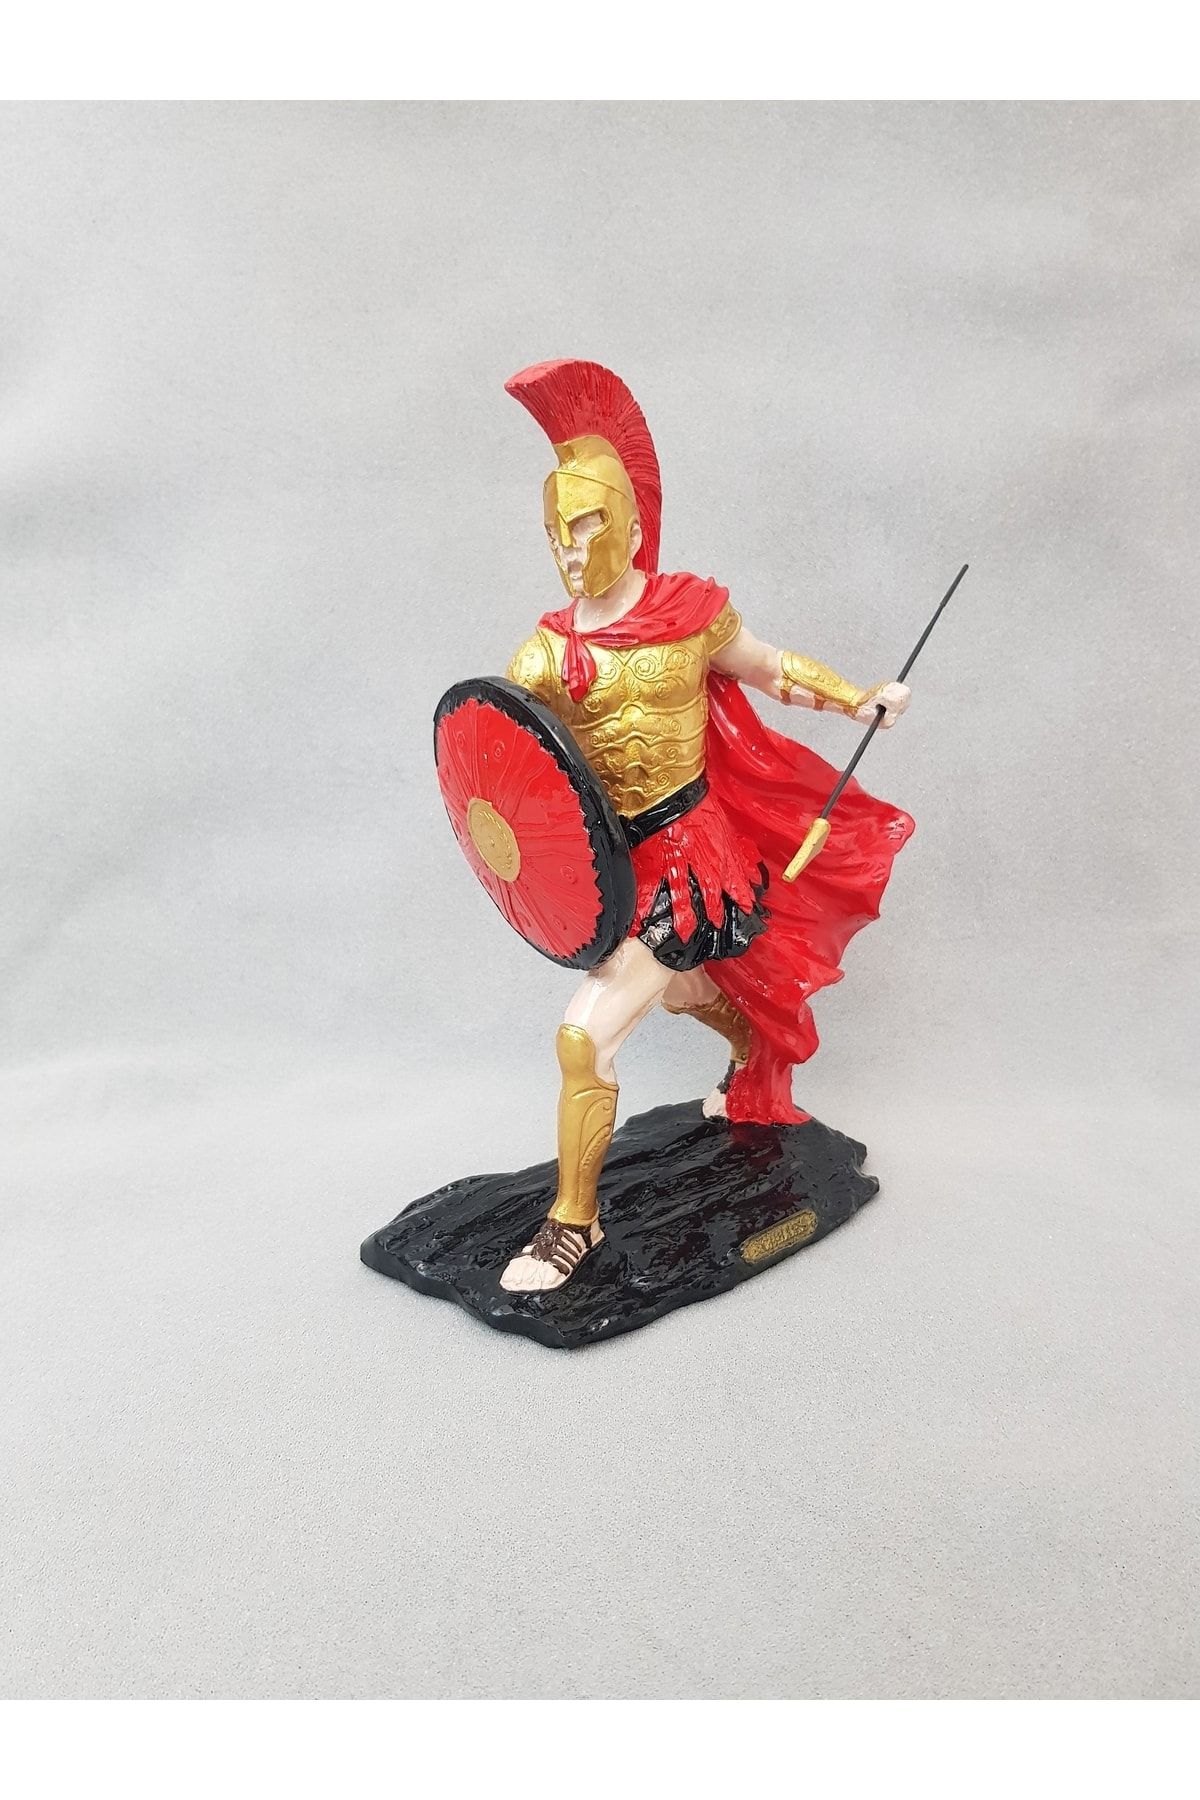 Arose Mızraklı Achilles Savaşçı 300 Spartalı Romalı Asker Heykel Biblo